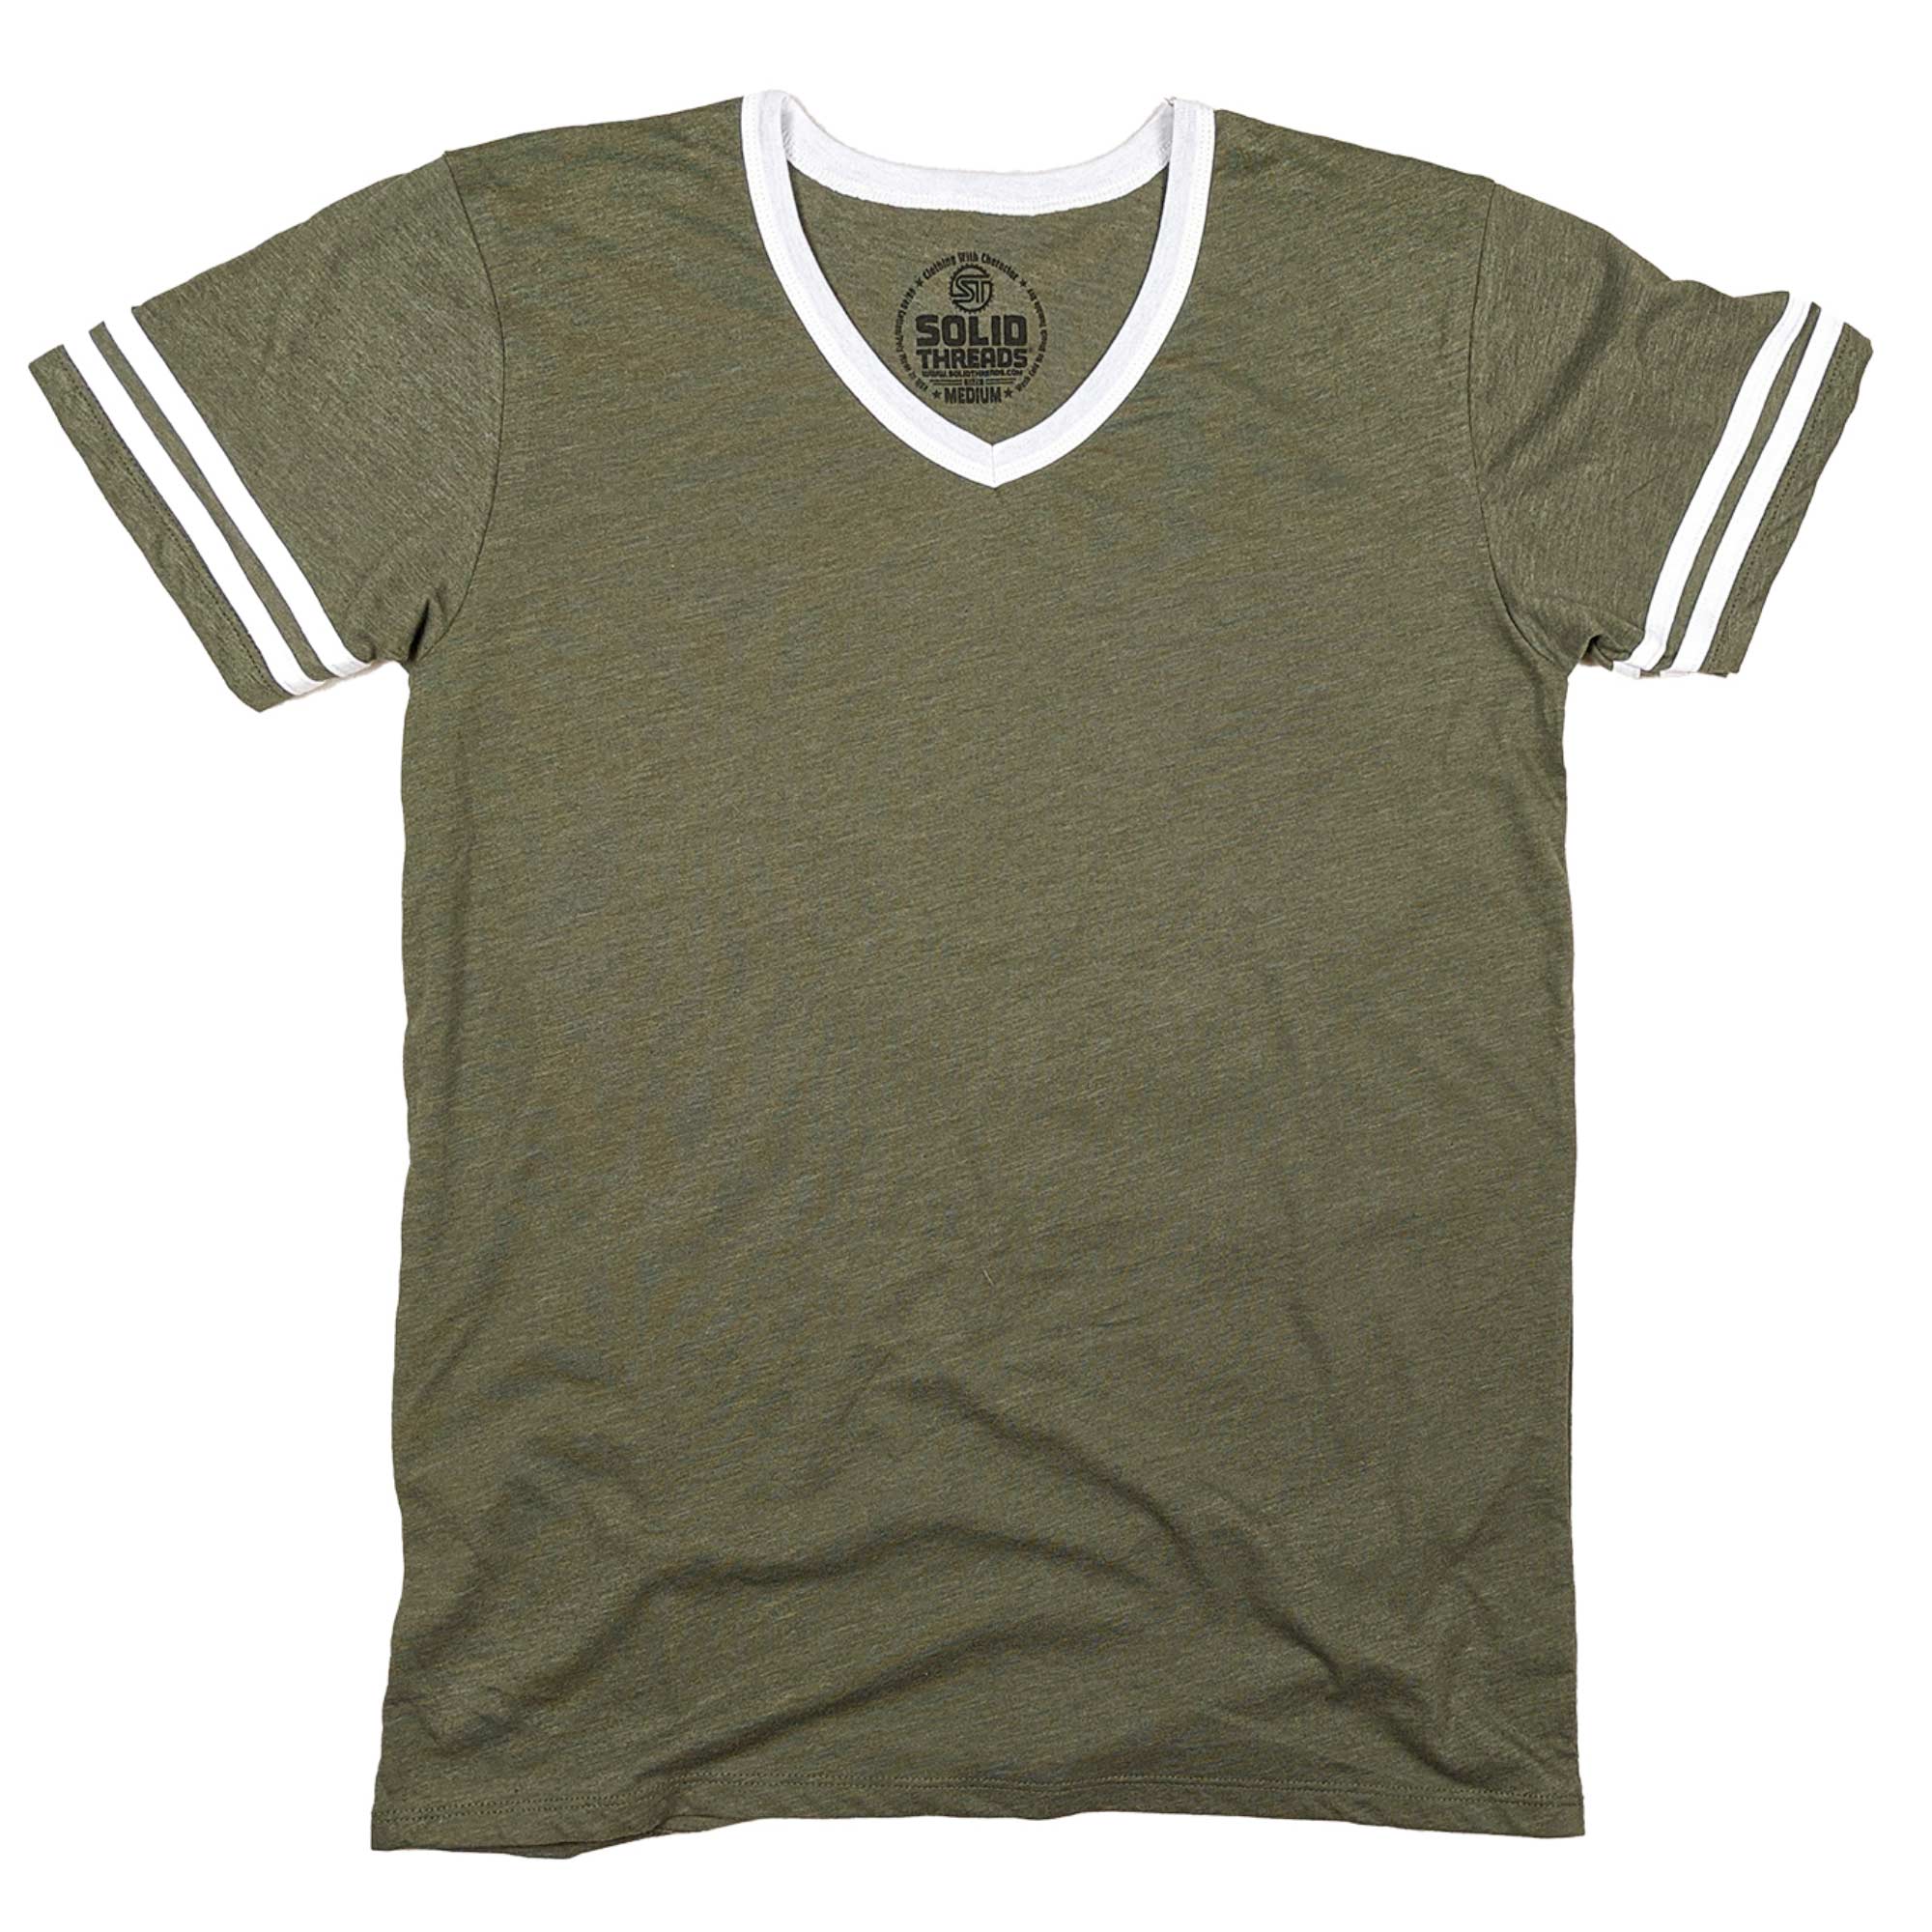 Men's Retro Ringer V-neck T-shirt Olive/White | Super Soft Vintage Inspired Tee | USA Made